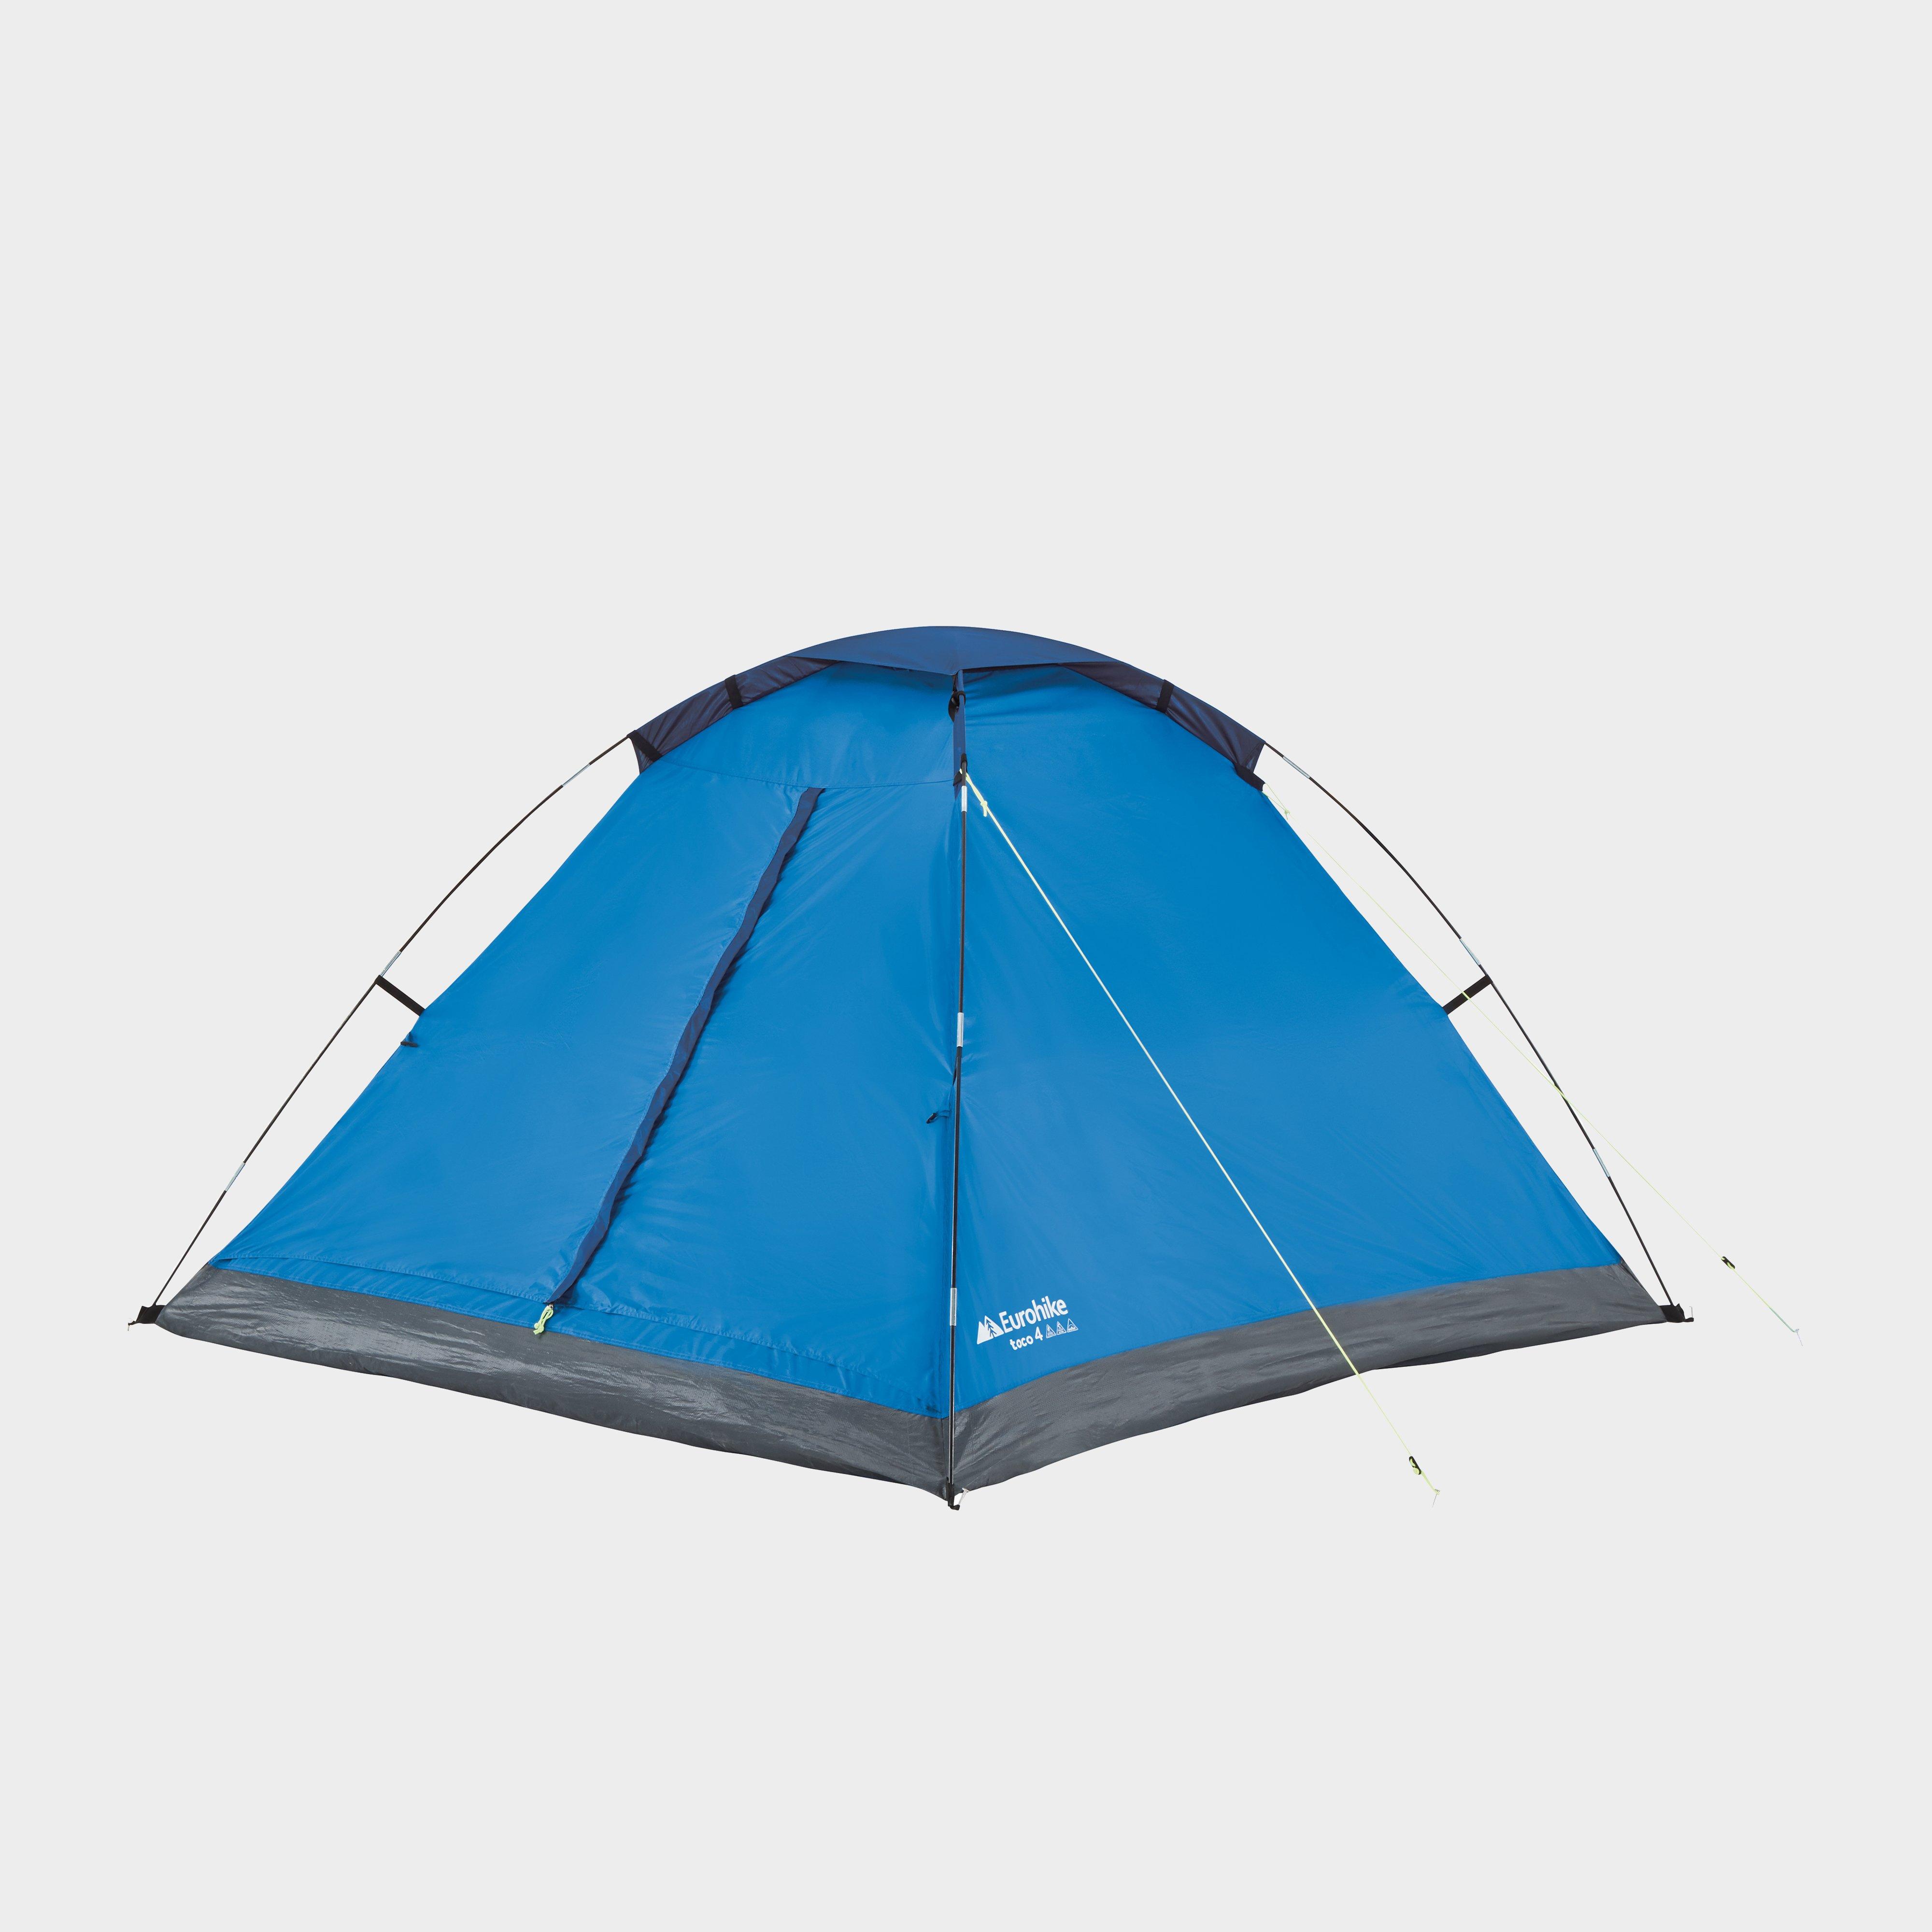 Eurohike Eurohike Toco 4 Dome Tent - Blue, Blue